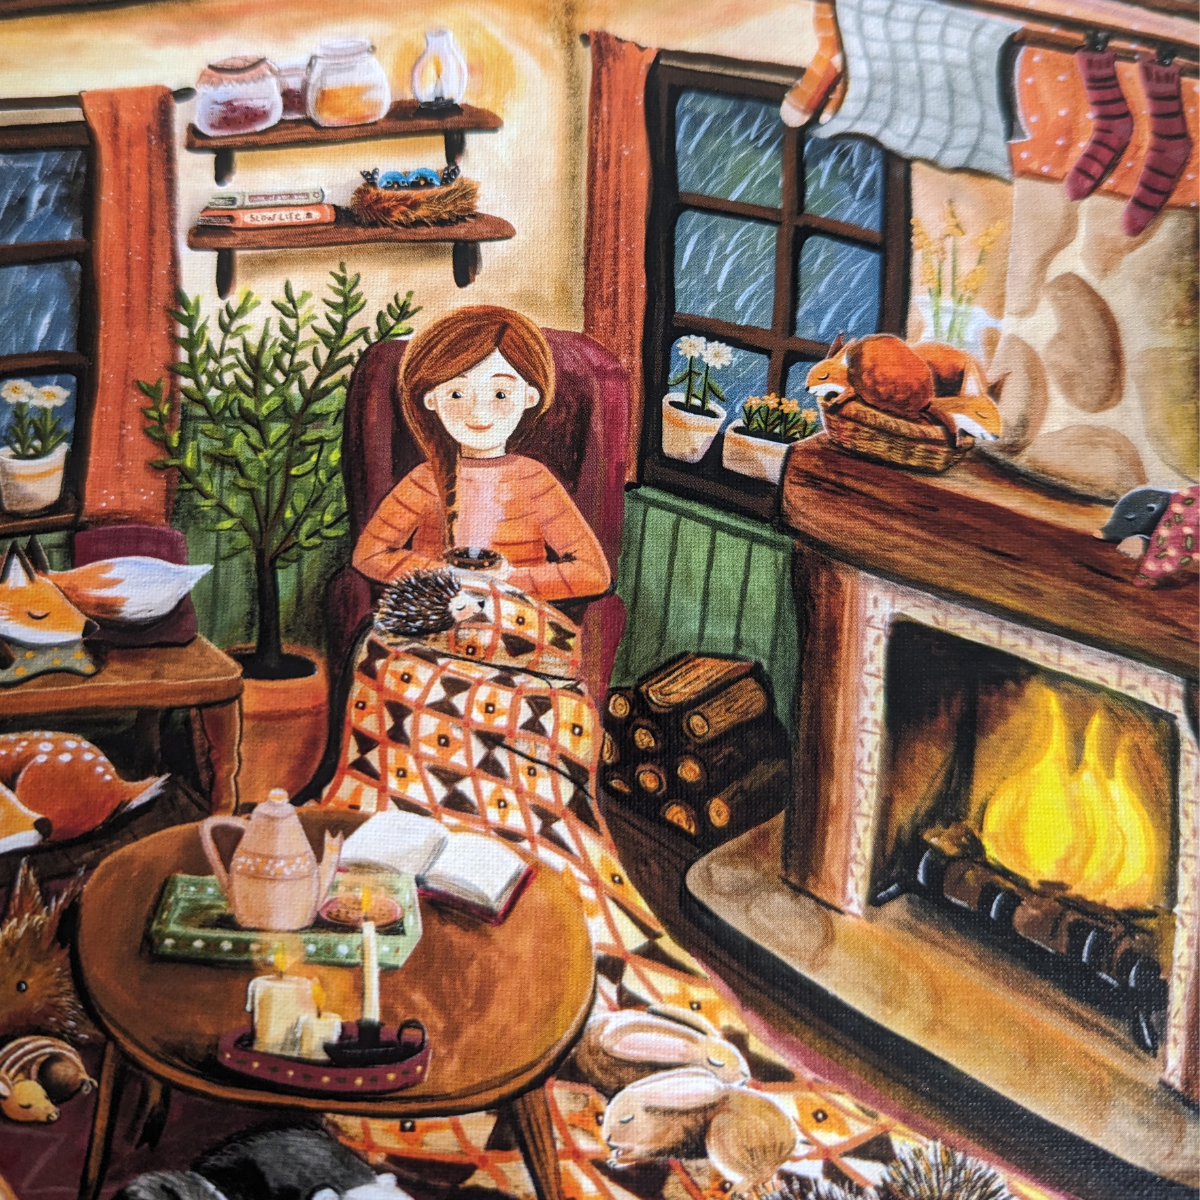 L'image du puzzle capture une scène douillette d'une jeune fille assise dans un fauteuil près d'un feu de cheminée entourée d'animaux de la forêt venus se réfugier dans sa demeure.